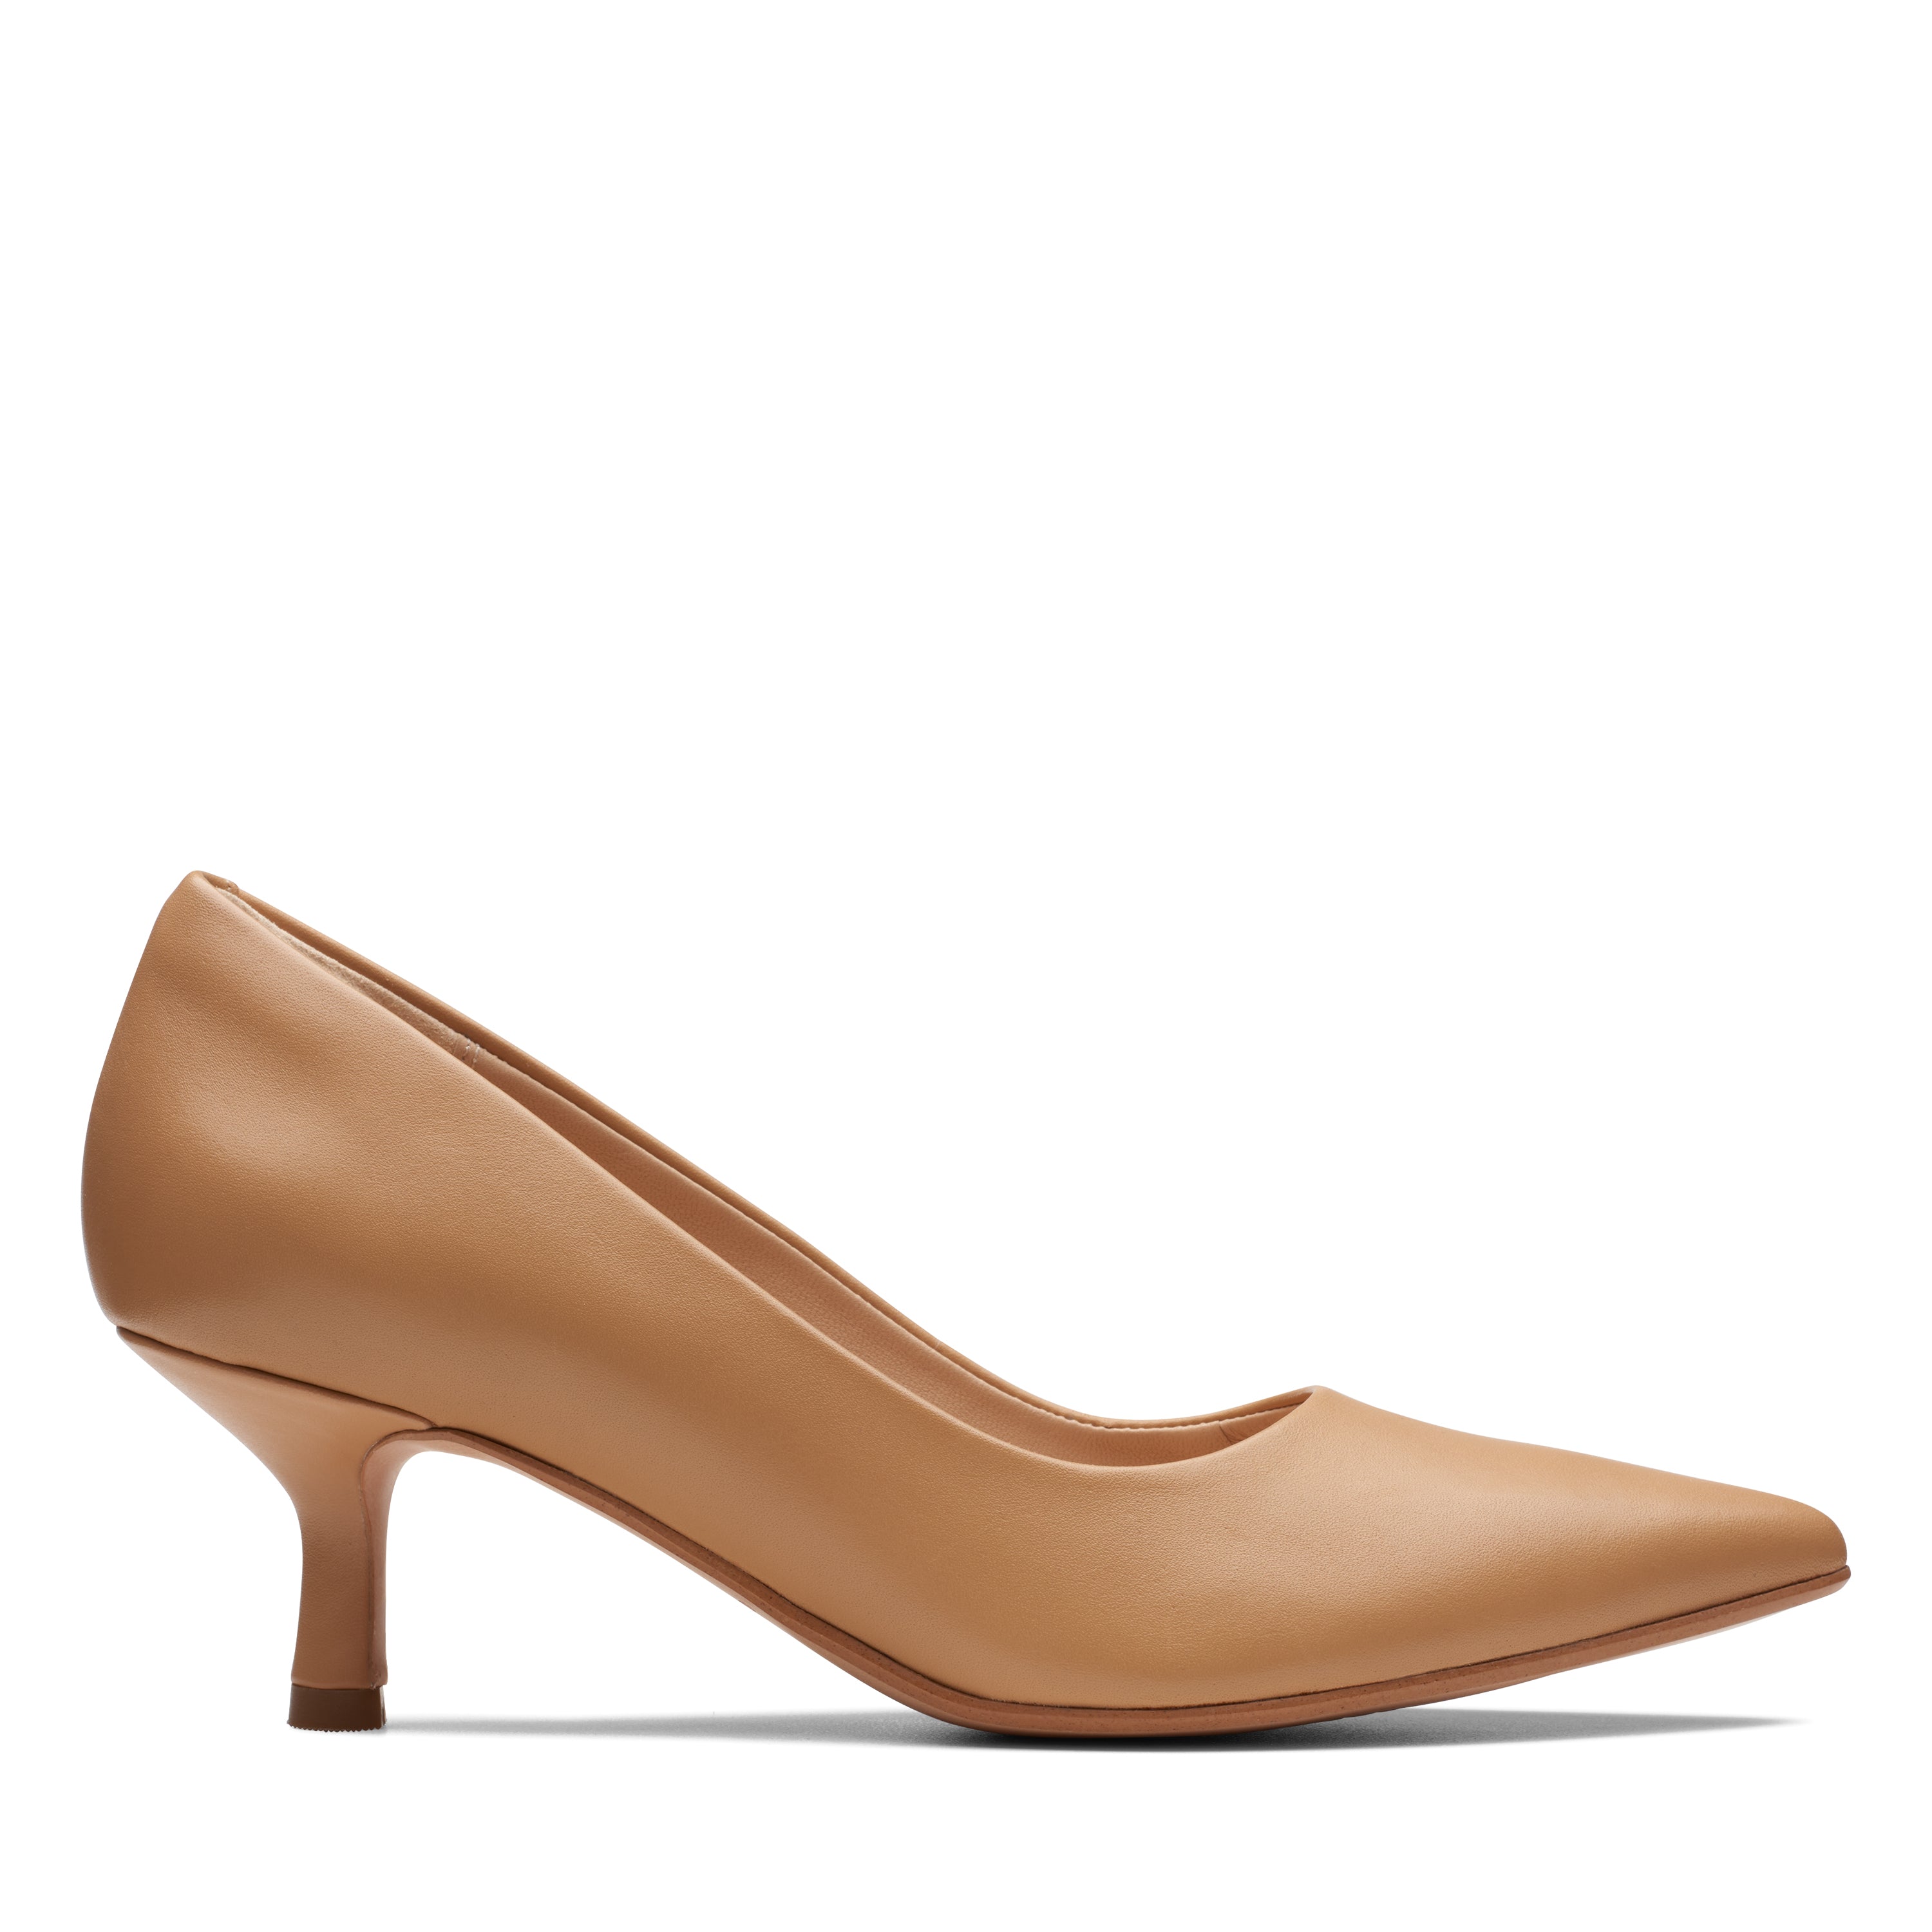 Buy Women's Heels Online | Clarks Singapore